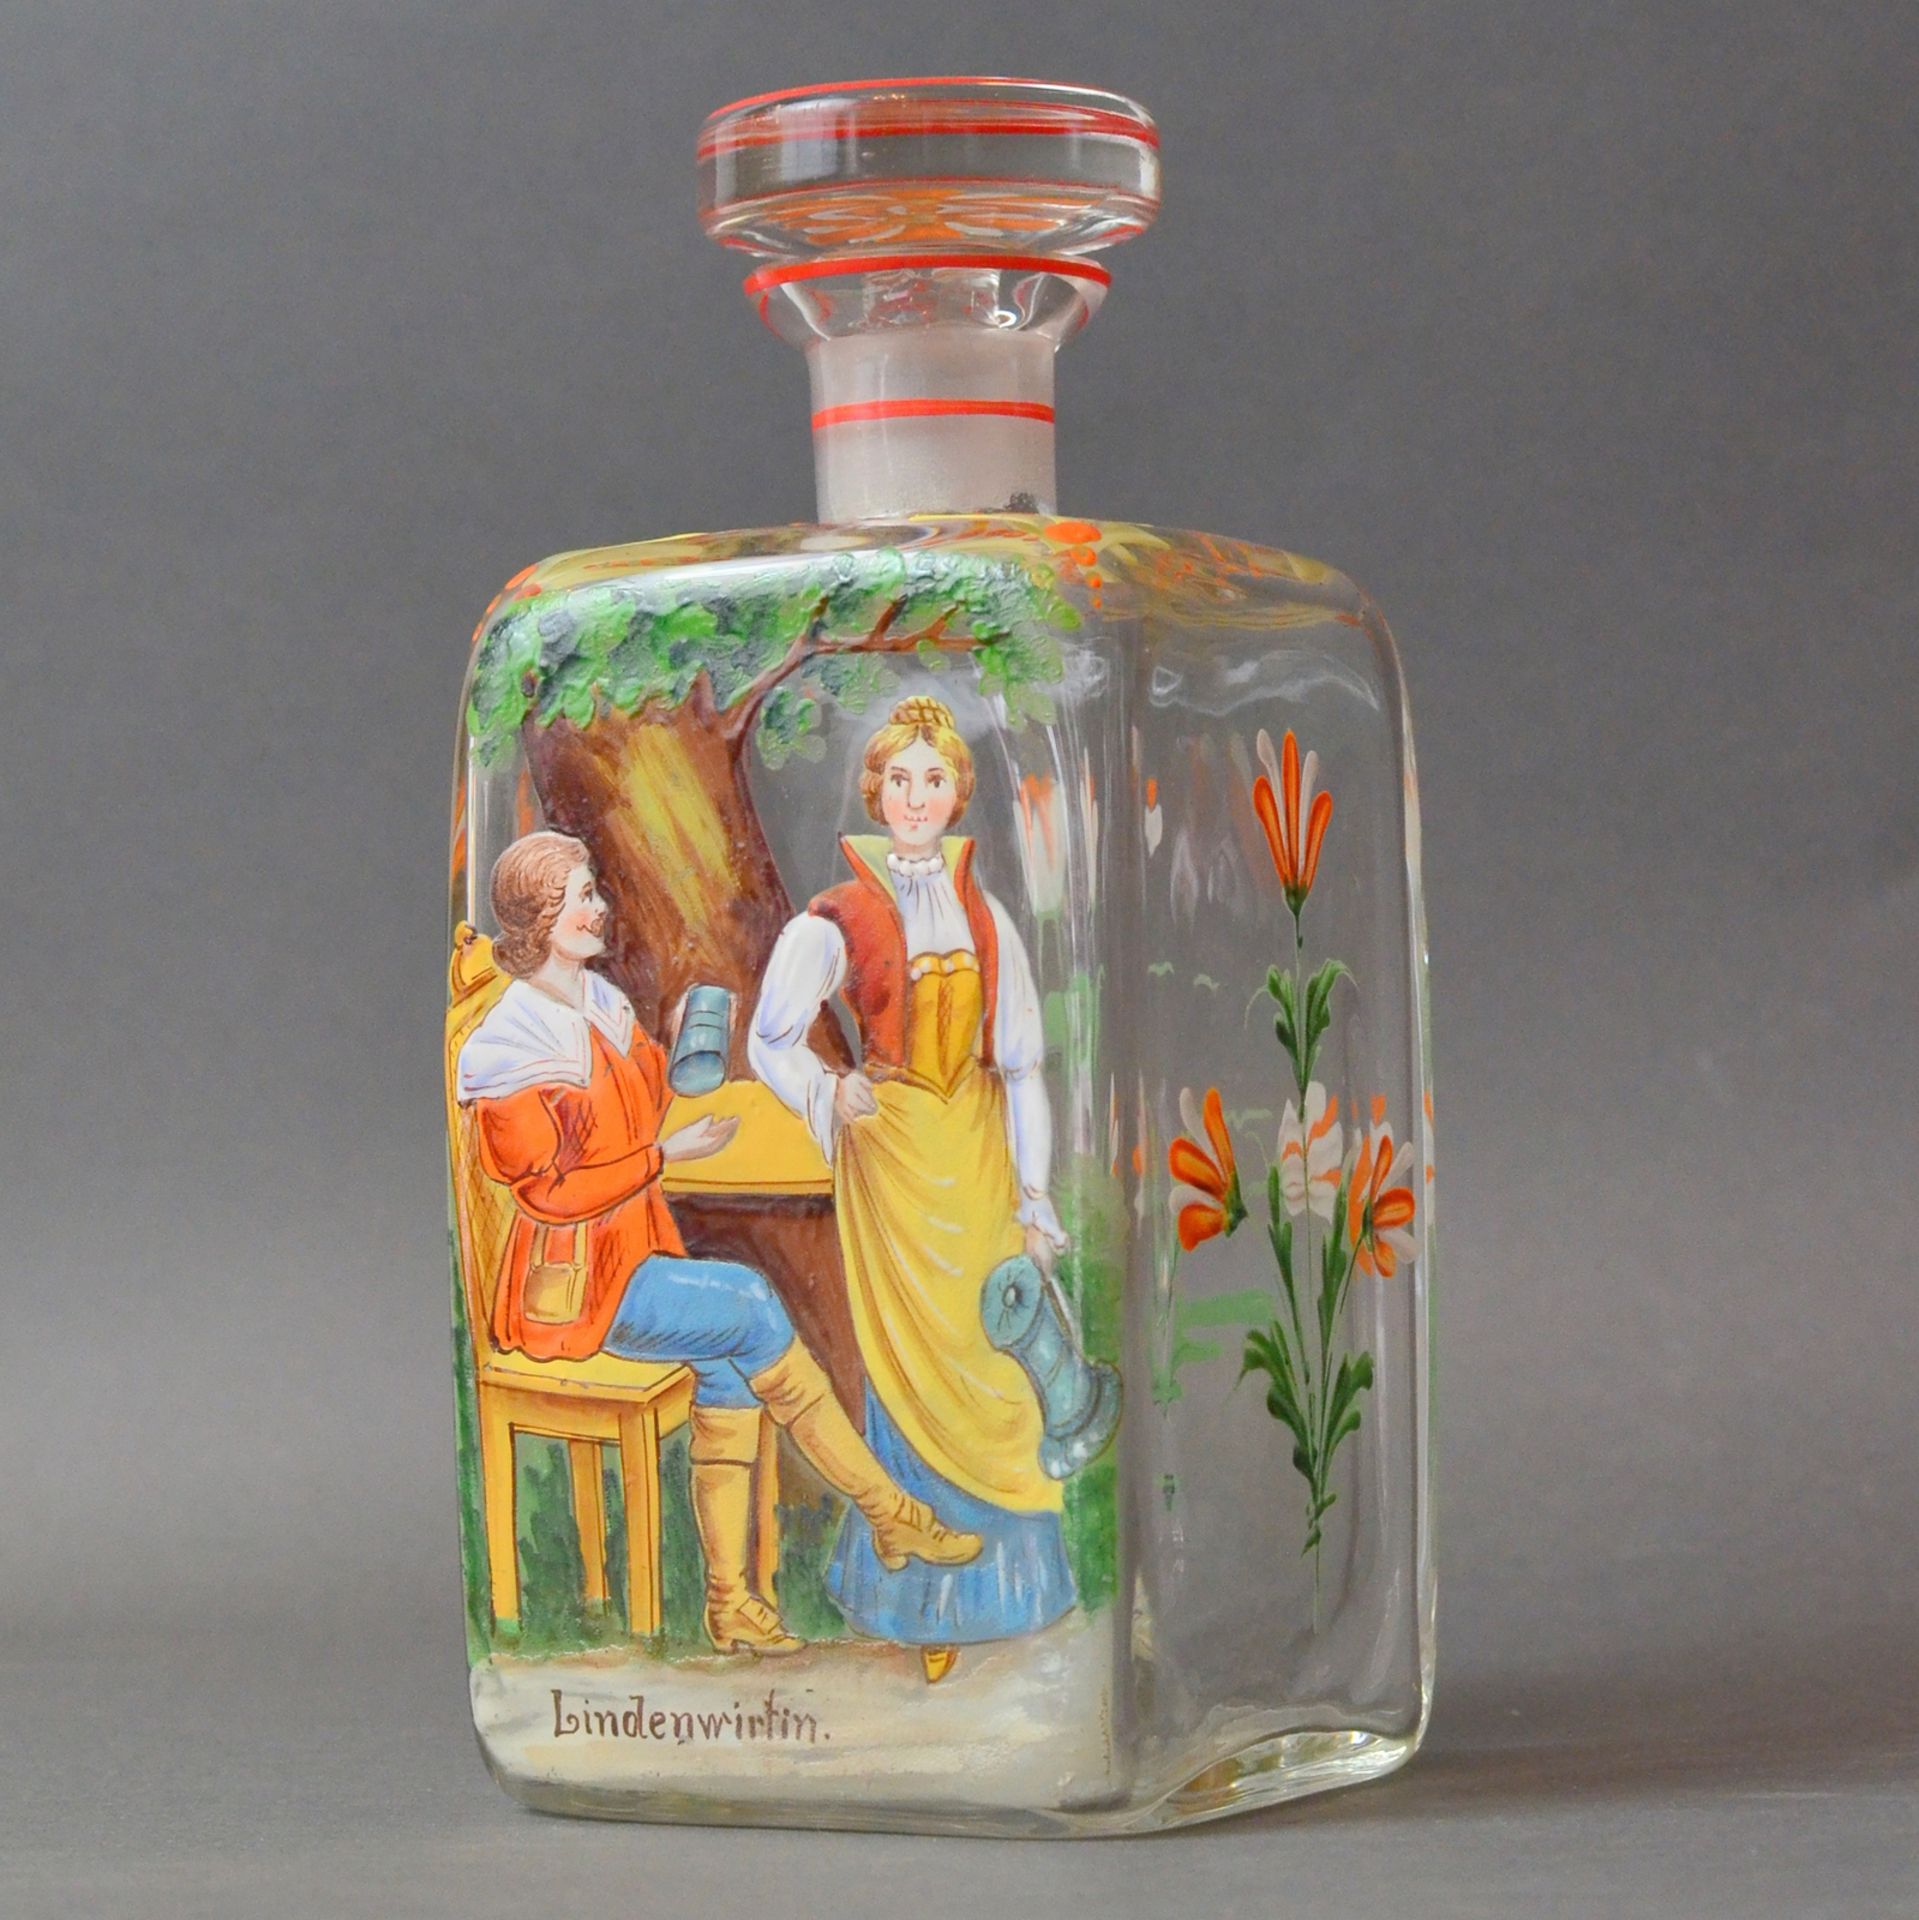 Gründerzeit-Karaffe, farbloses Glas, formgeblasen, um 1880, "Die Lindenwirtin zu Nürnberg",